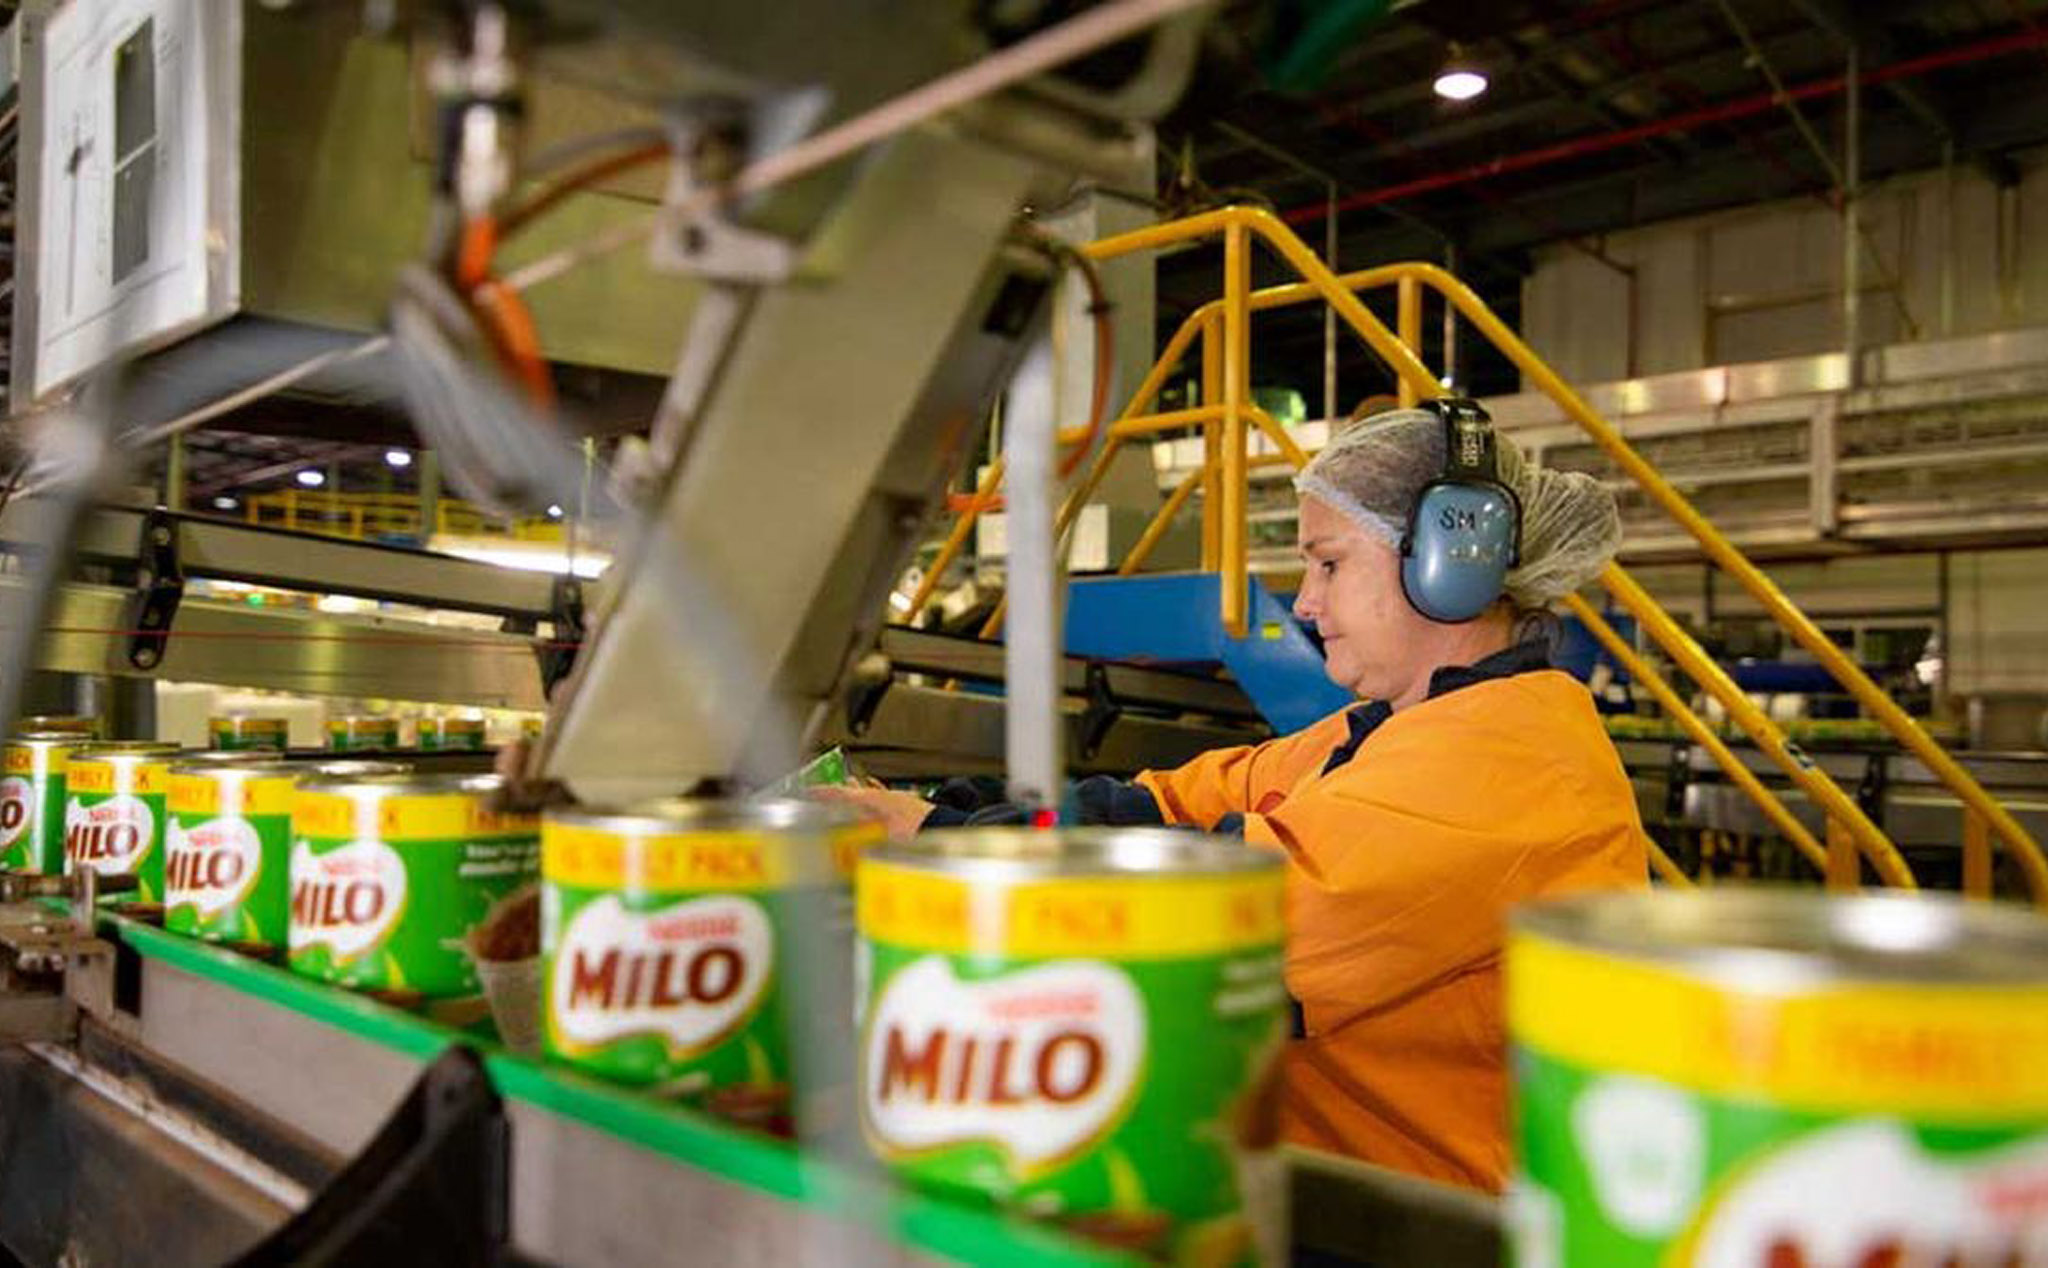 Nhà máy sản xuất Milo ở Úc kỷ niệm 100 năm hoạt động